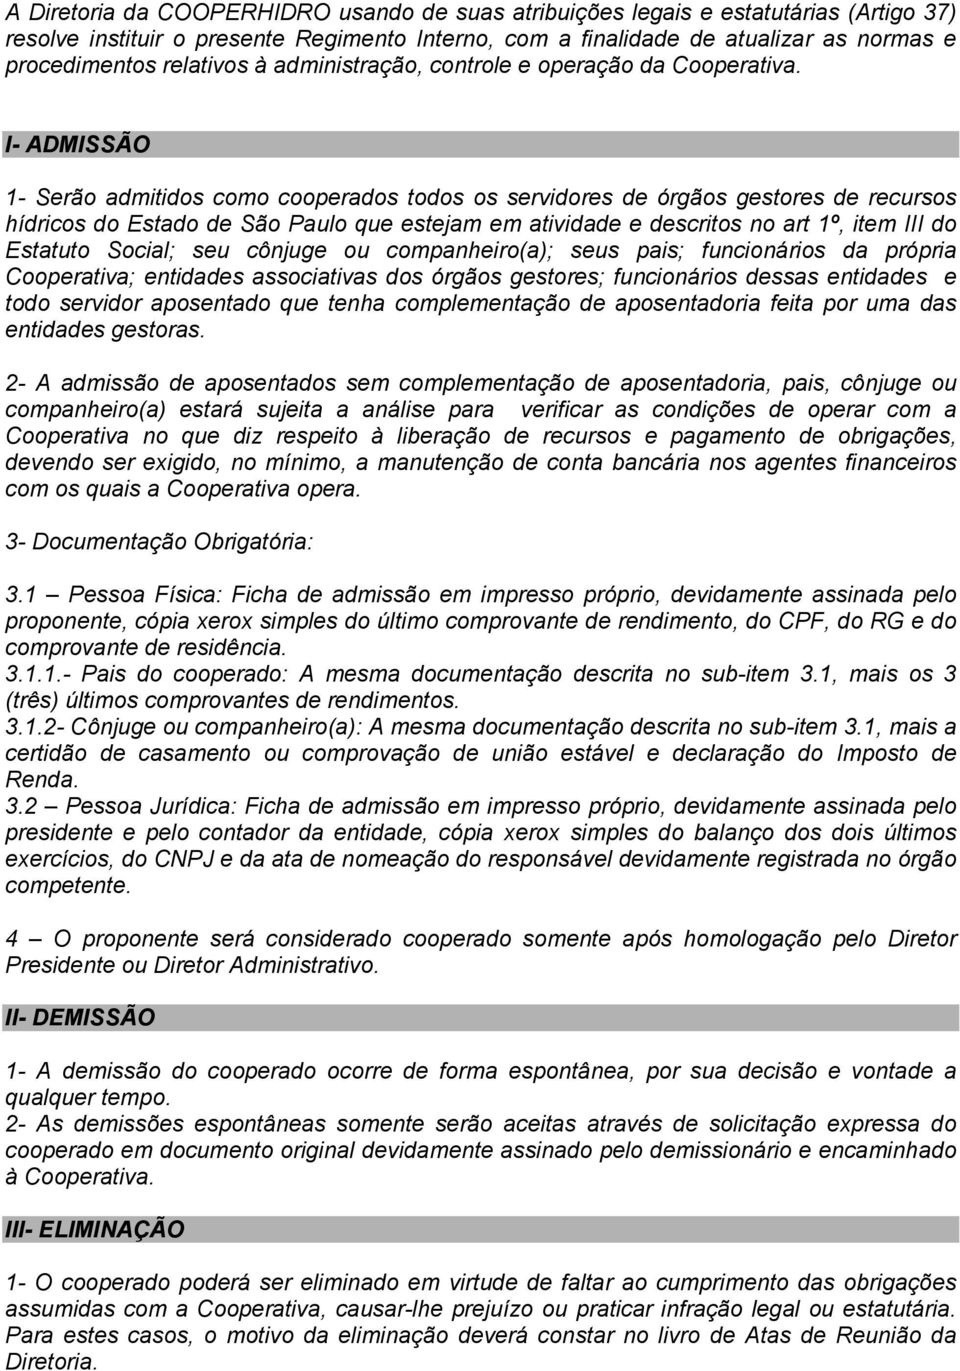 I- ADMISSÃO 1- Serão admitidos como cooperados todos os servidores de órgãos gestores de recursos hídricos do Estado de São Paulo que estejam em atividade e descritos no art 1º, item III do Estatuto